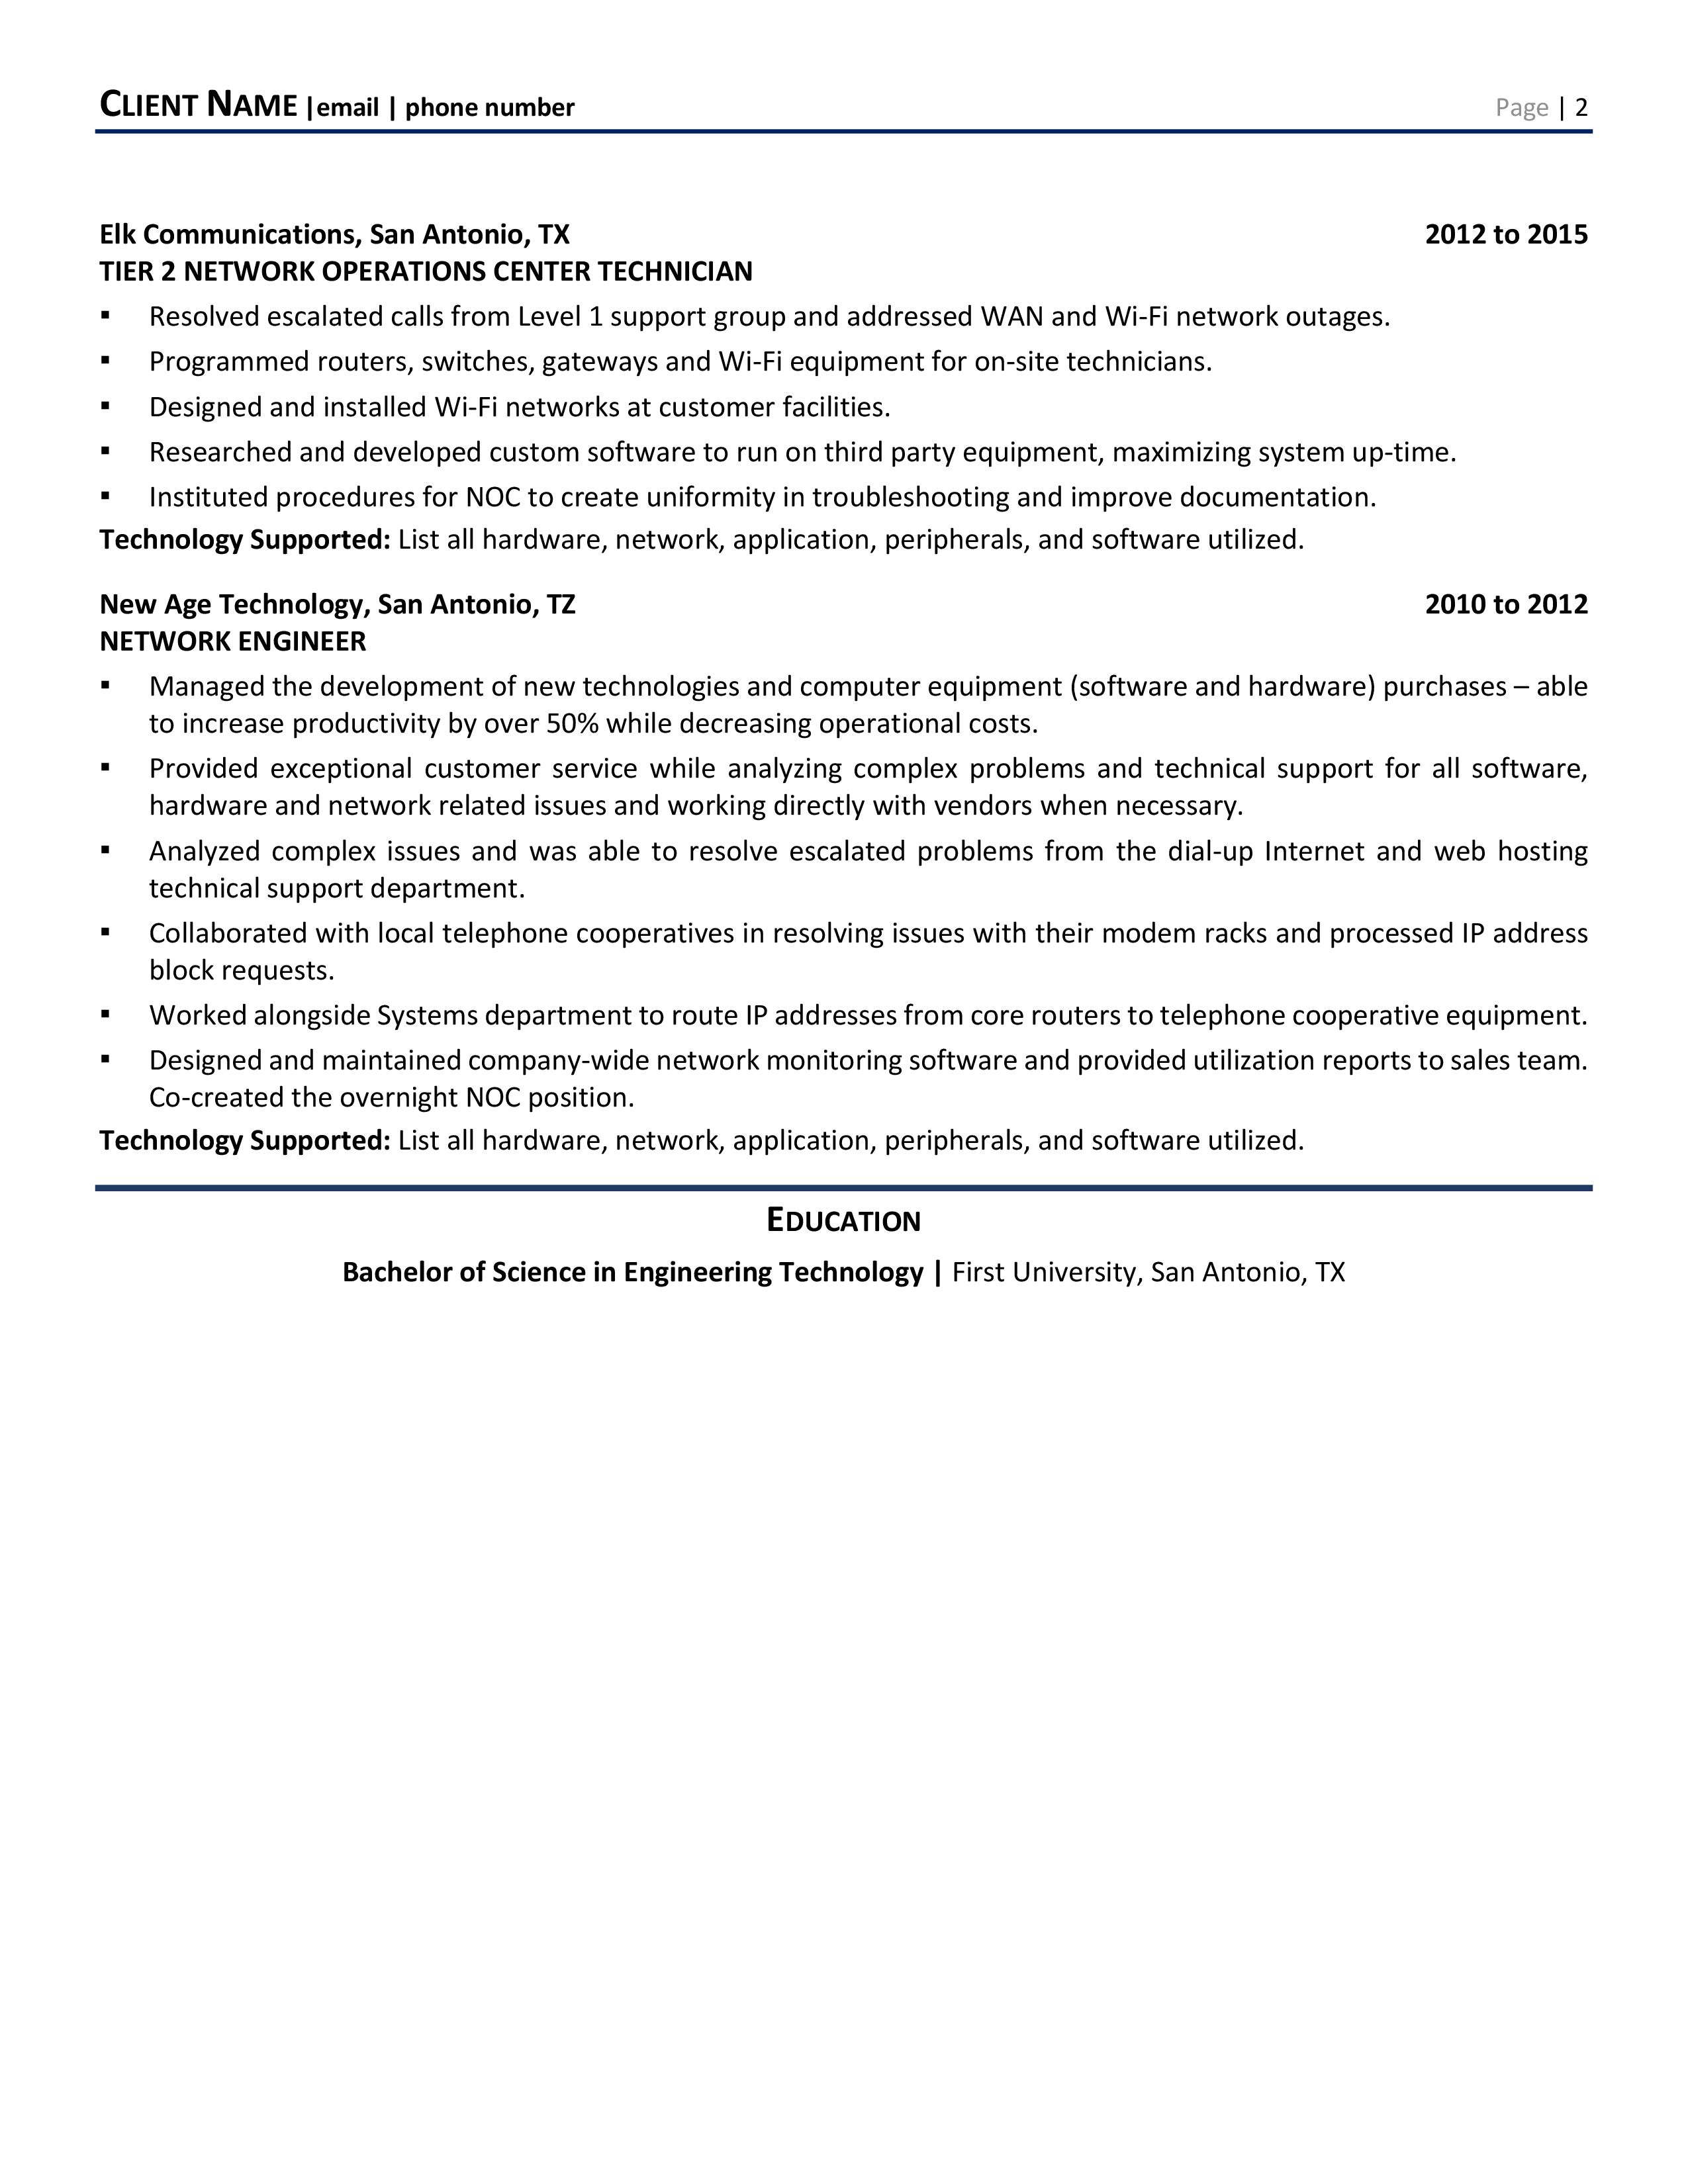 resume of desktop support engineer